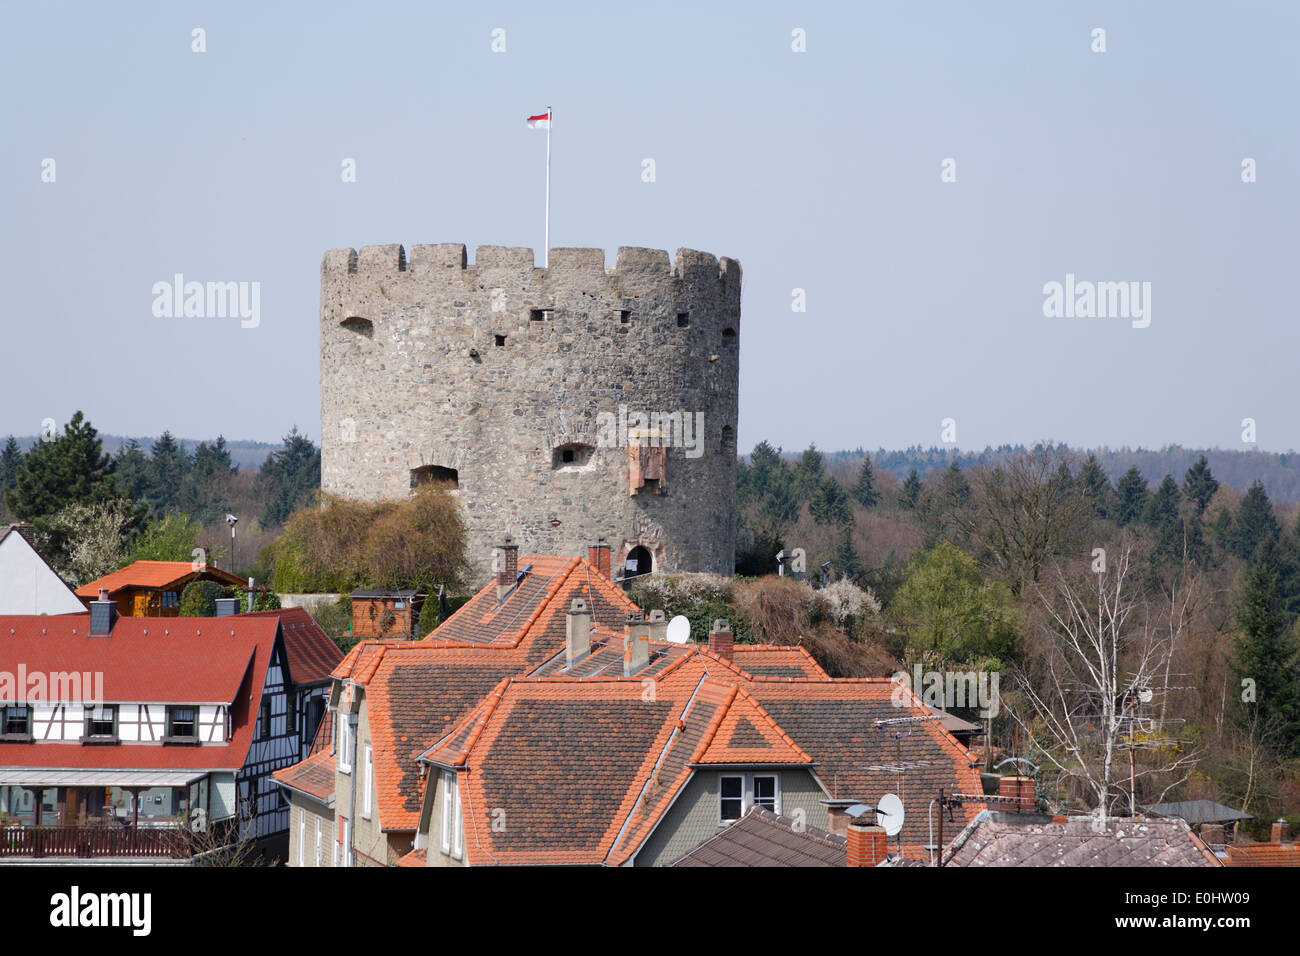 Deutschland, Hessen, Odenwald, Lichtenberg, runder Turm, Festung, Bollwerk, Schloss Lichtenberg Stock Photo